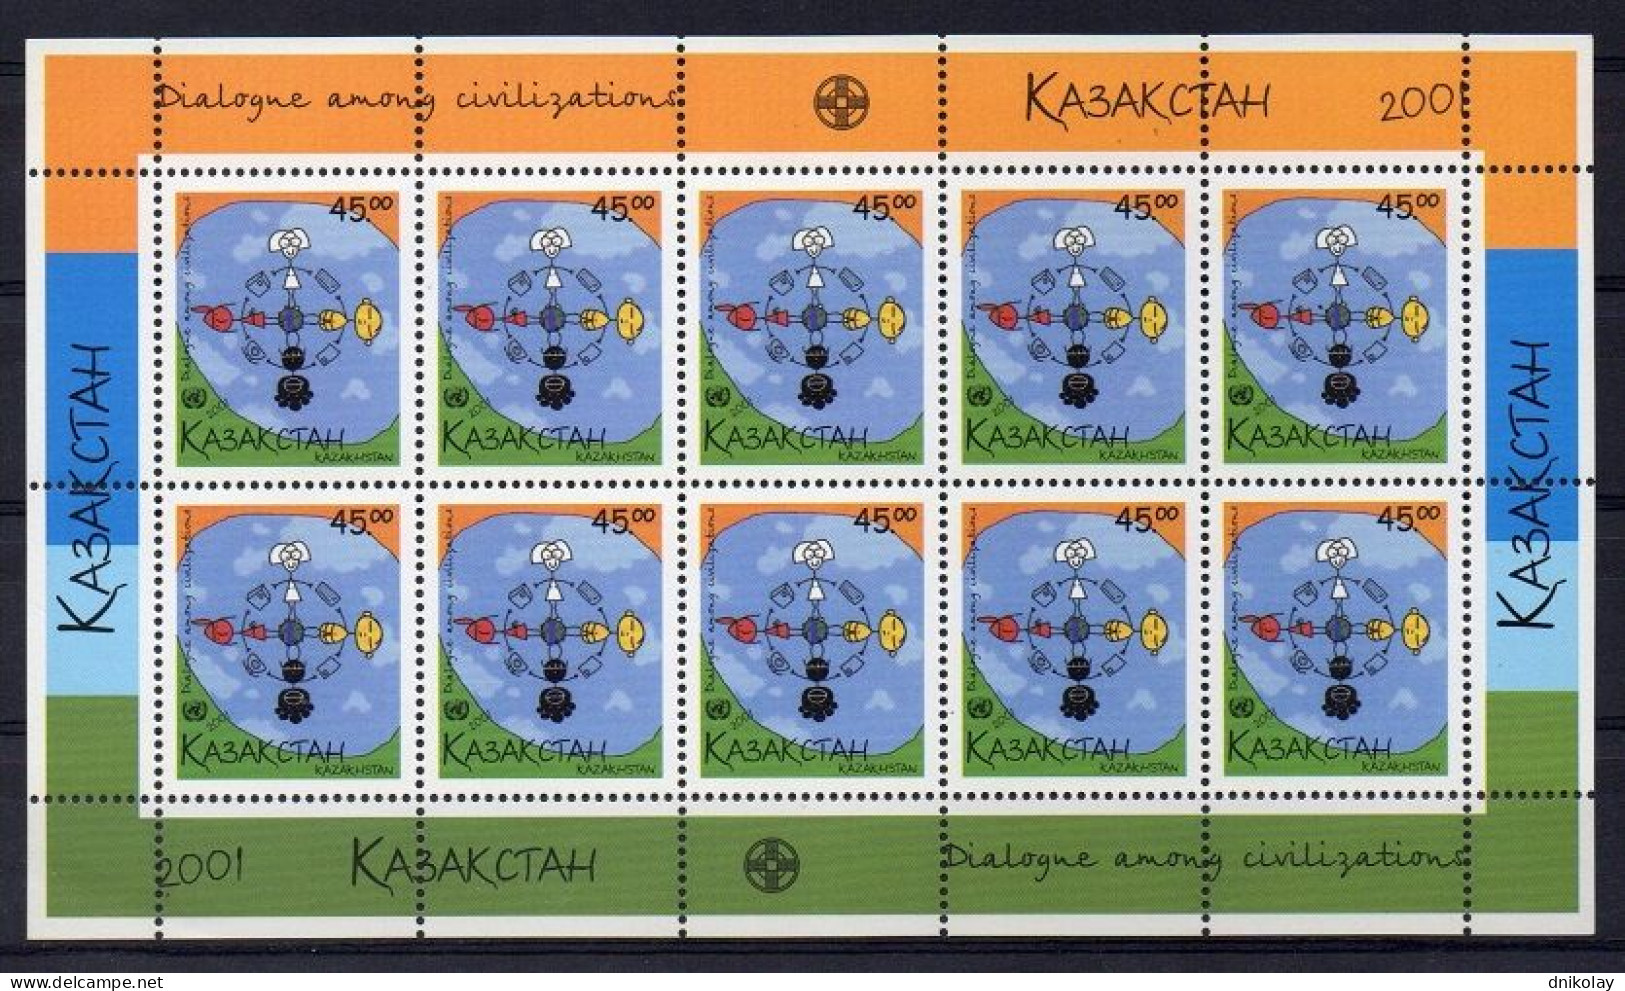 2001 348 Kazakhstan United Nations Year Of Dialogue Among Civilizations MNH - Kazakhstan